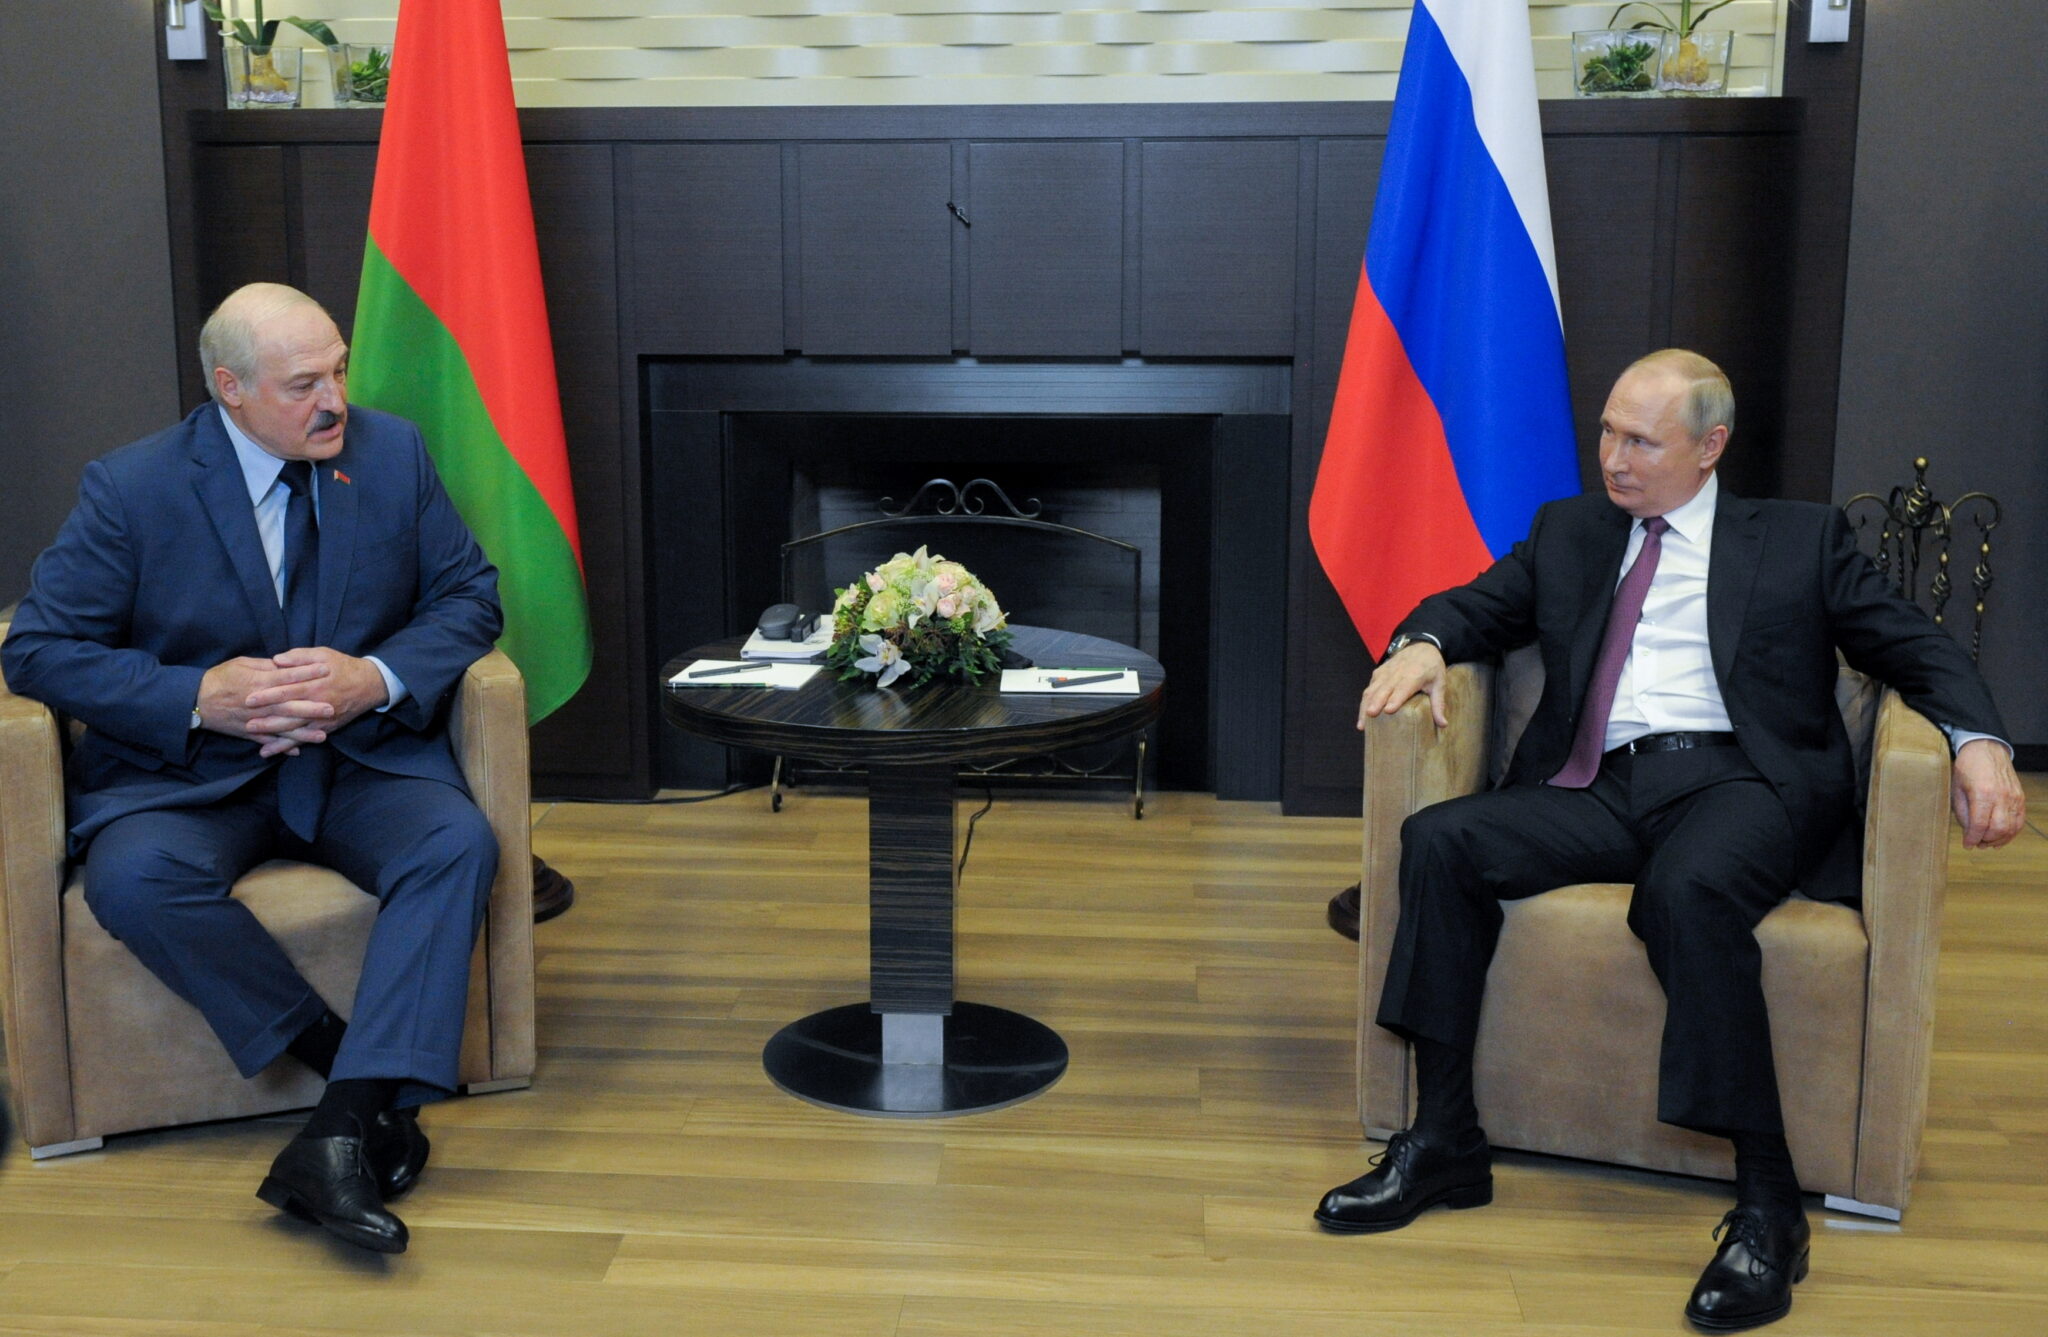 Александр Лукашенко и Владимир Путин на встрече в Сочи. Фото  SPUTNIK/via REUTERS/Scanpix/Leta